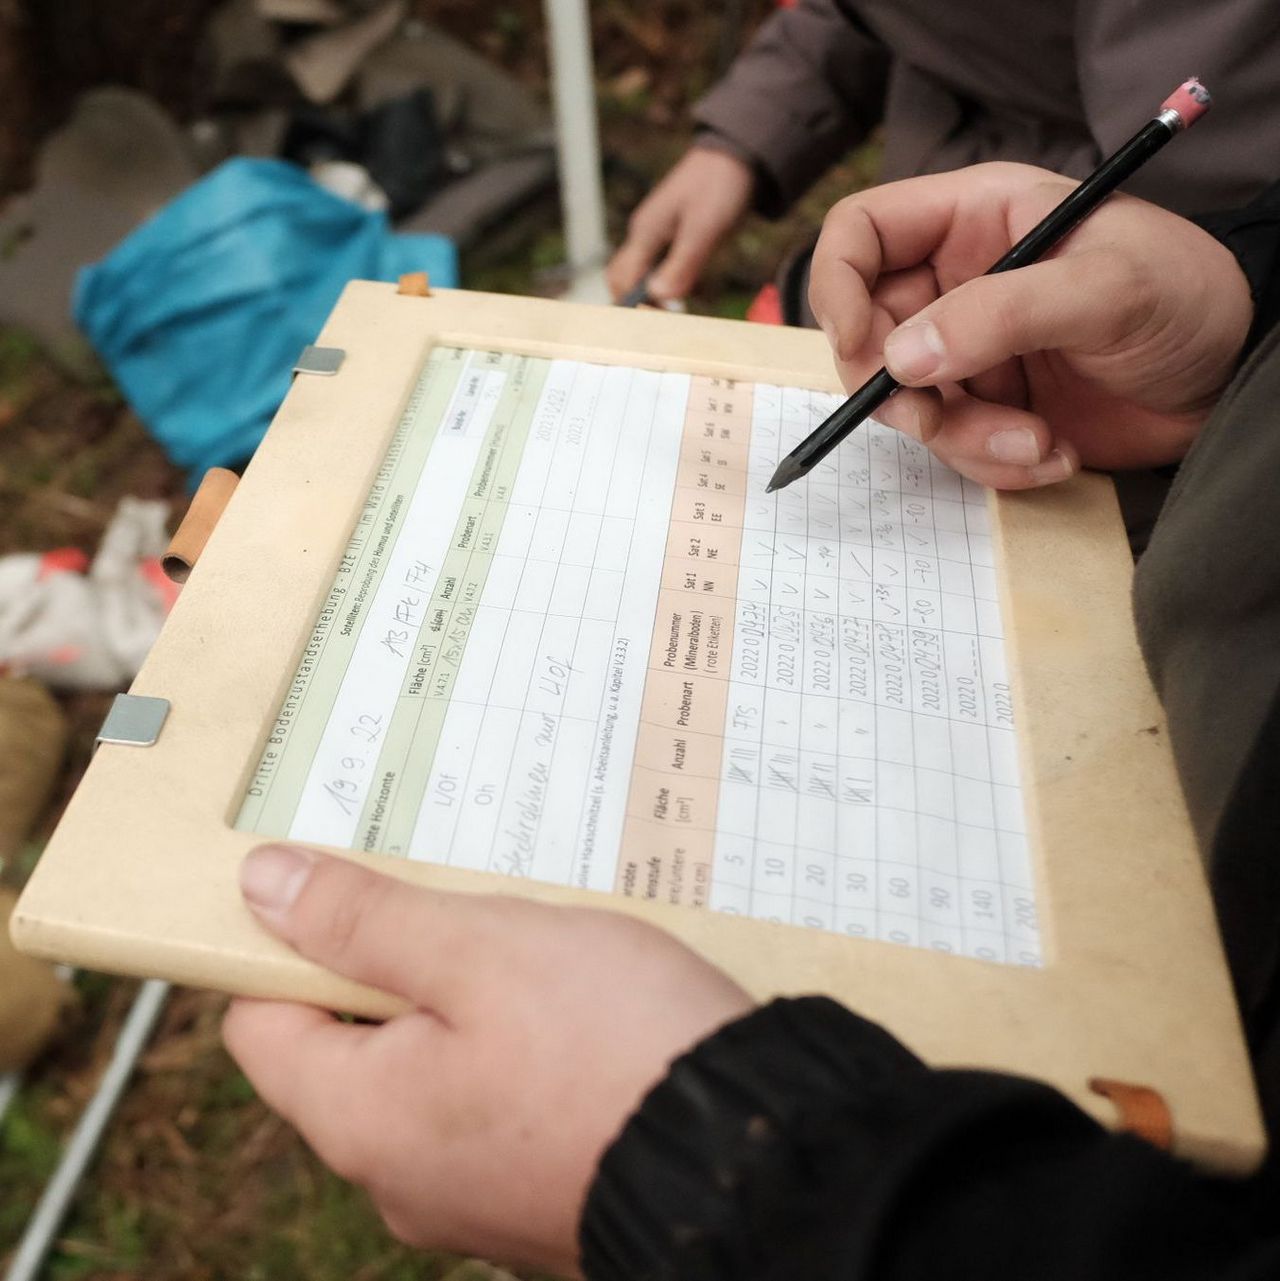 Datenaufnahme während der Feldarbeit. Die Daten zu den Bodenuntersuchungen werden auf einem Protokoll notiert, welches in ein Klemmbrett gespannt ist.